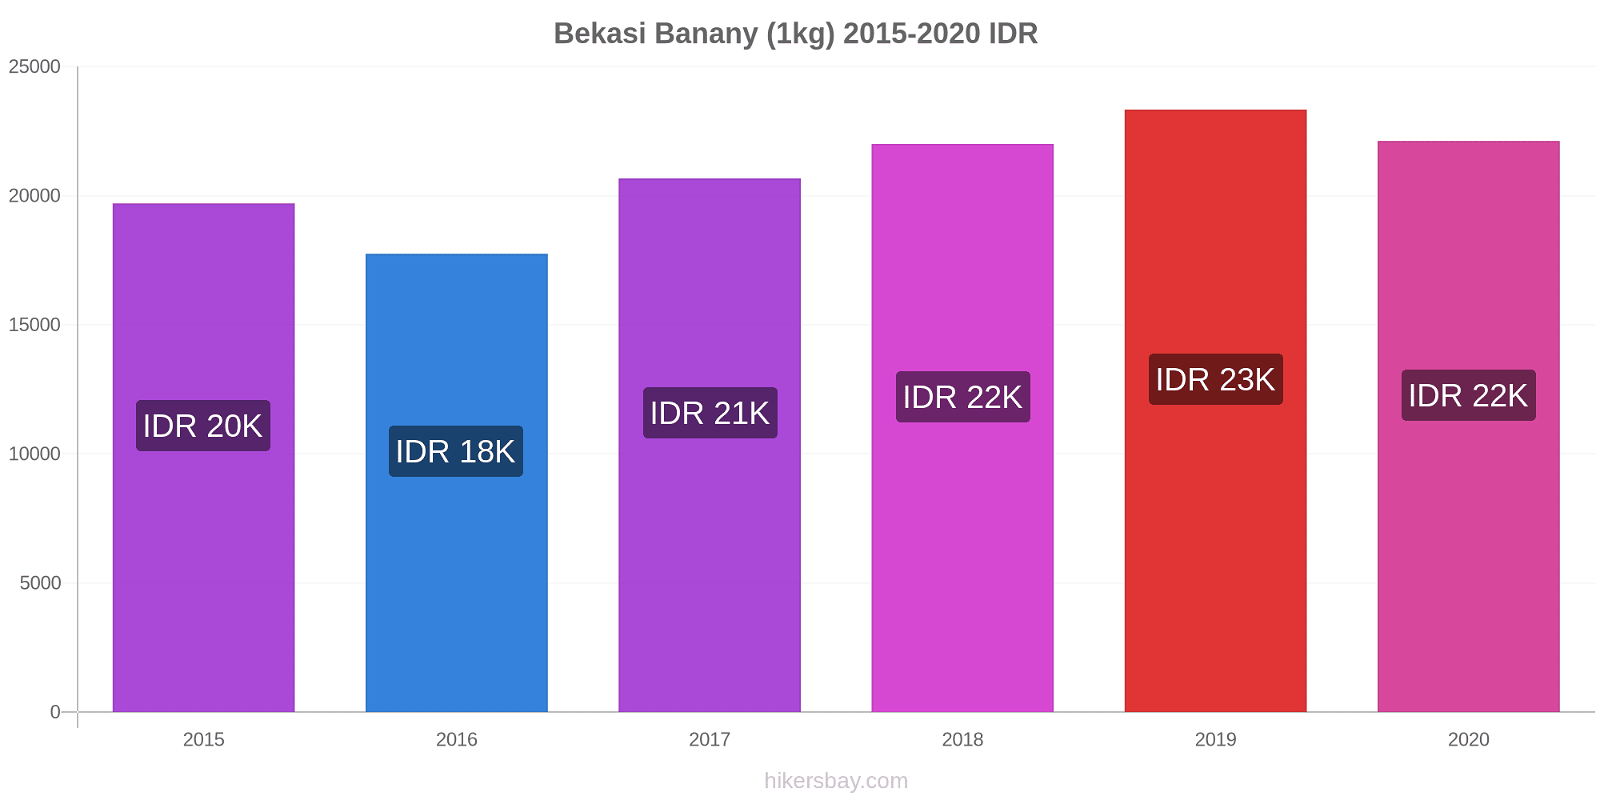 Bekasi zmiany cen Banany (1kg) hikersbay.com